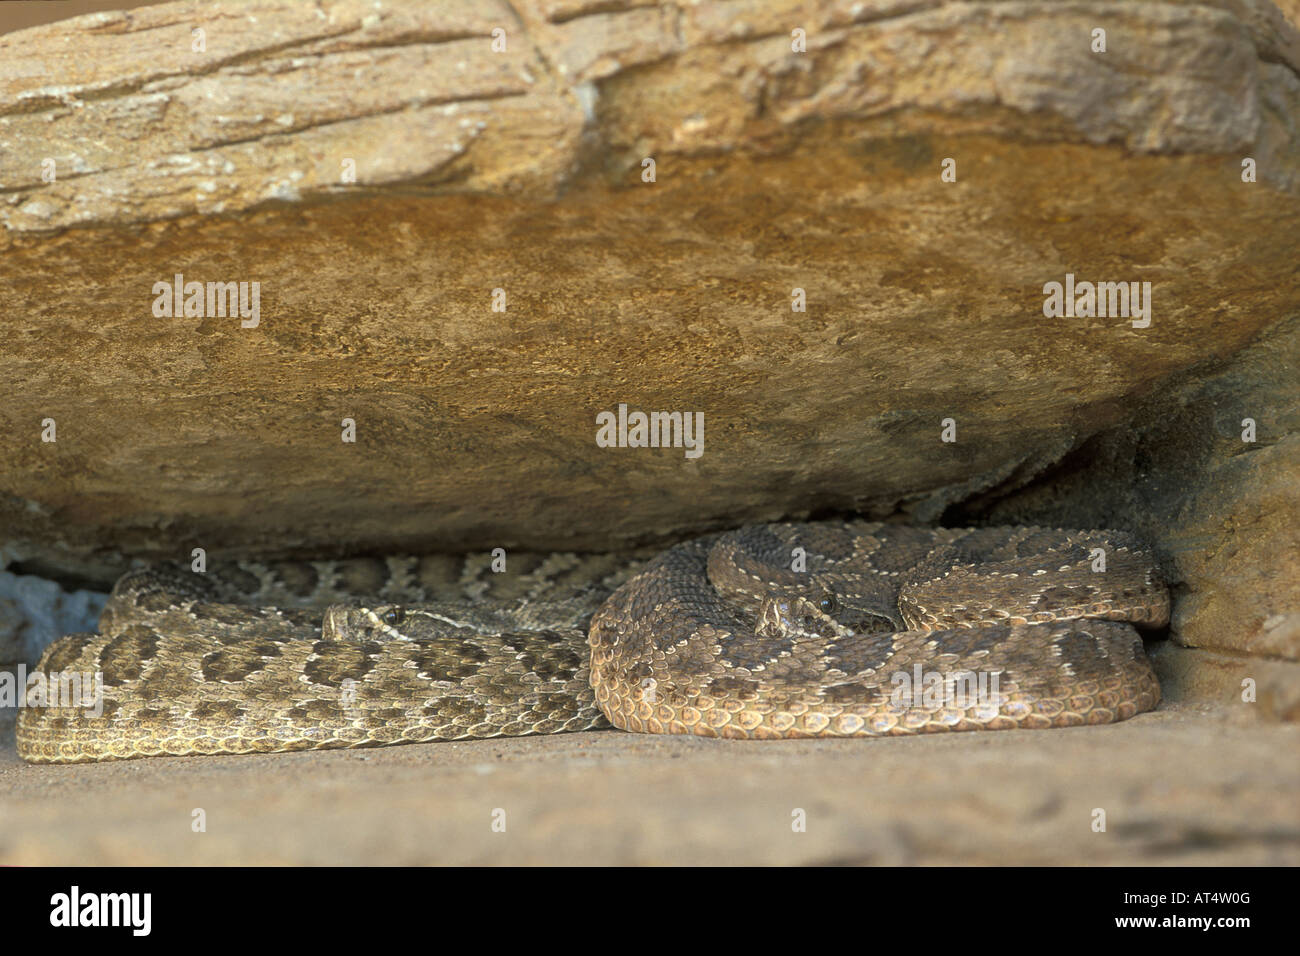 serpente a sonagli animali velenosi Bothrops atrox rettili ofidi serpenti New Mexico Nuovo Messico USA Americhe snake poisonous Stock Photo